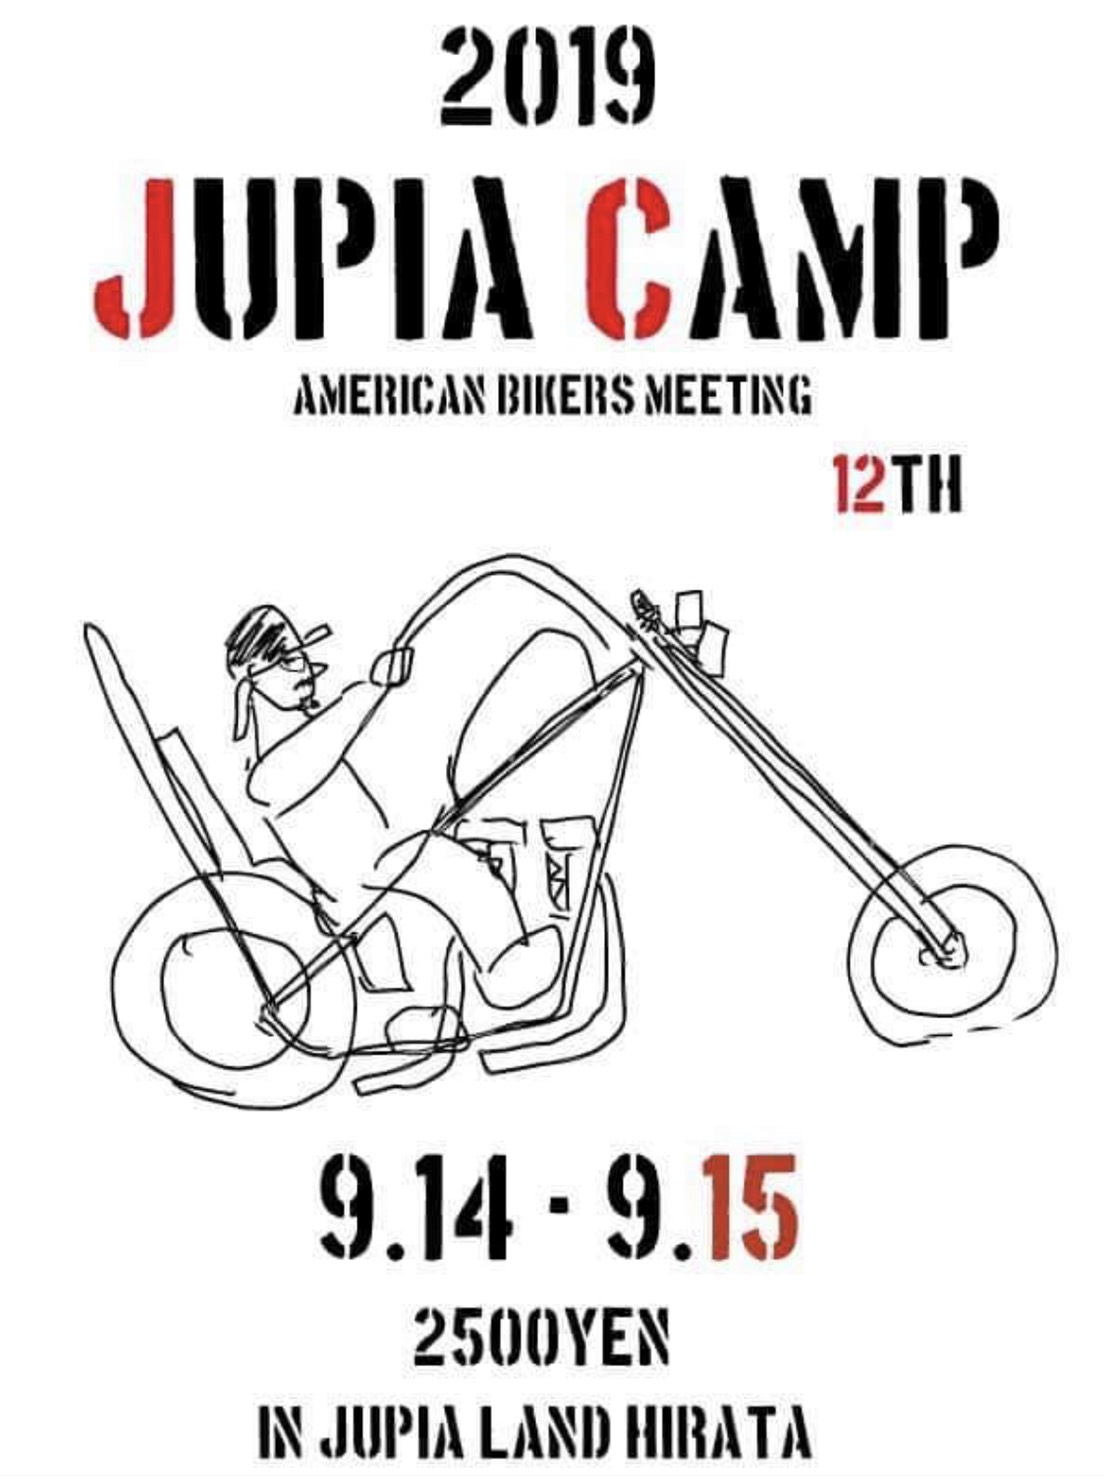 JUPIA CAMP 12TH